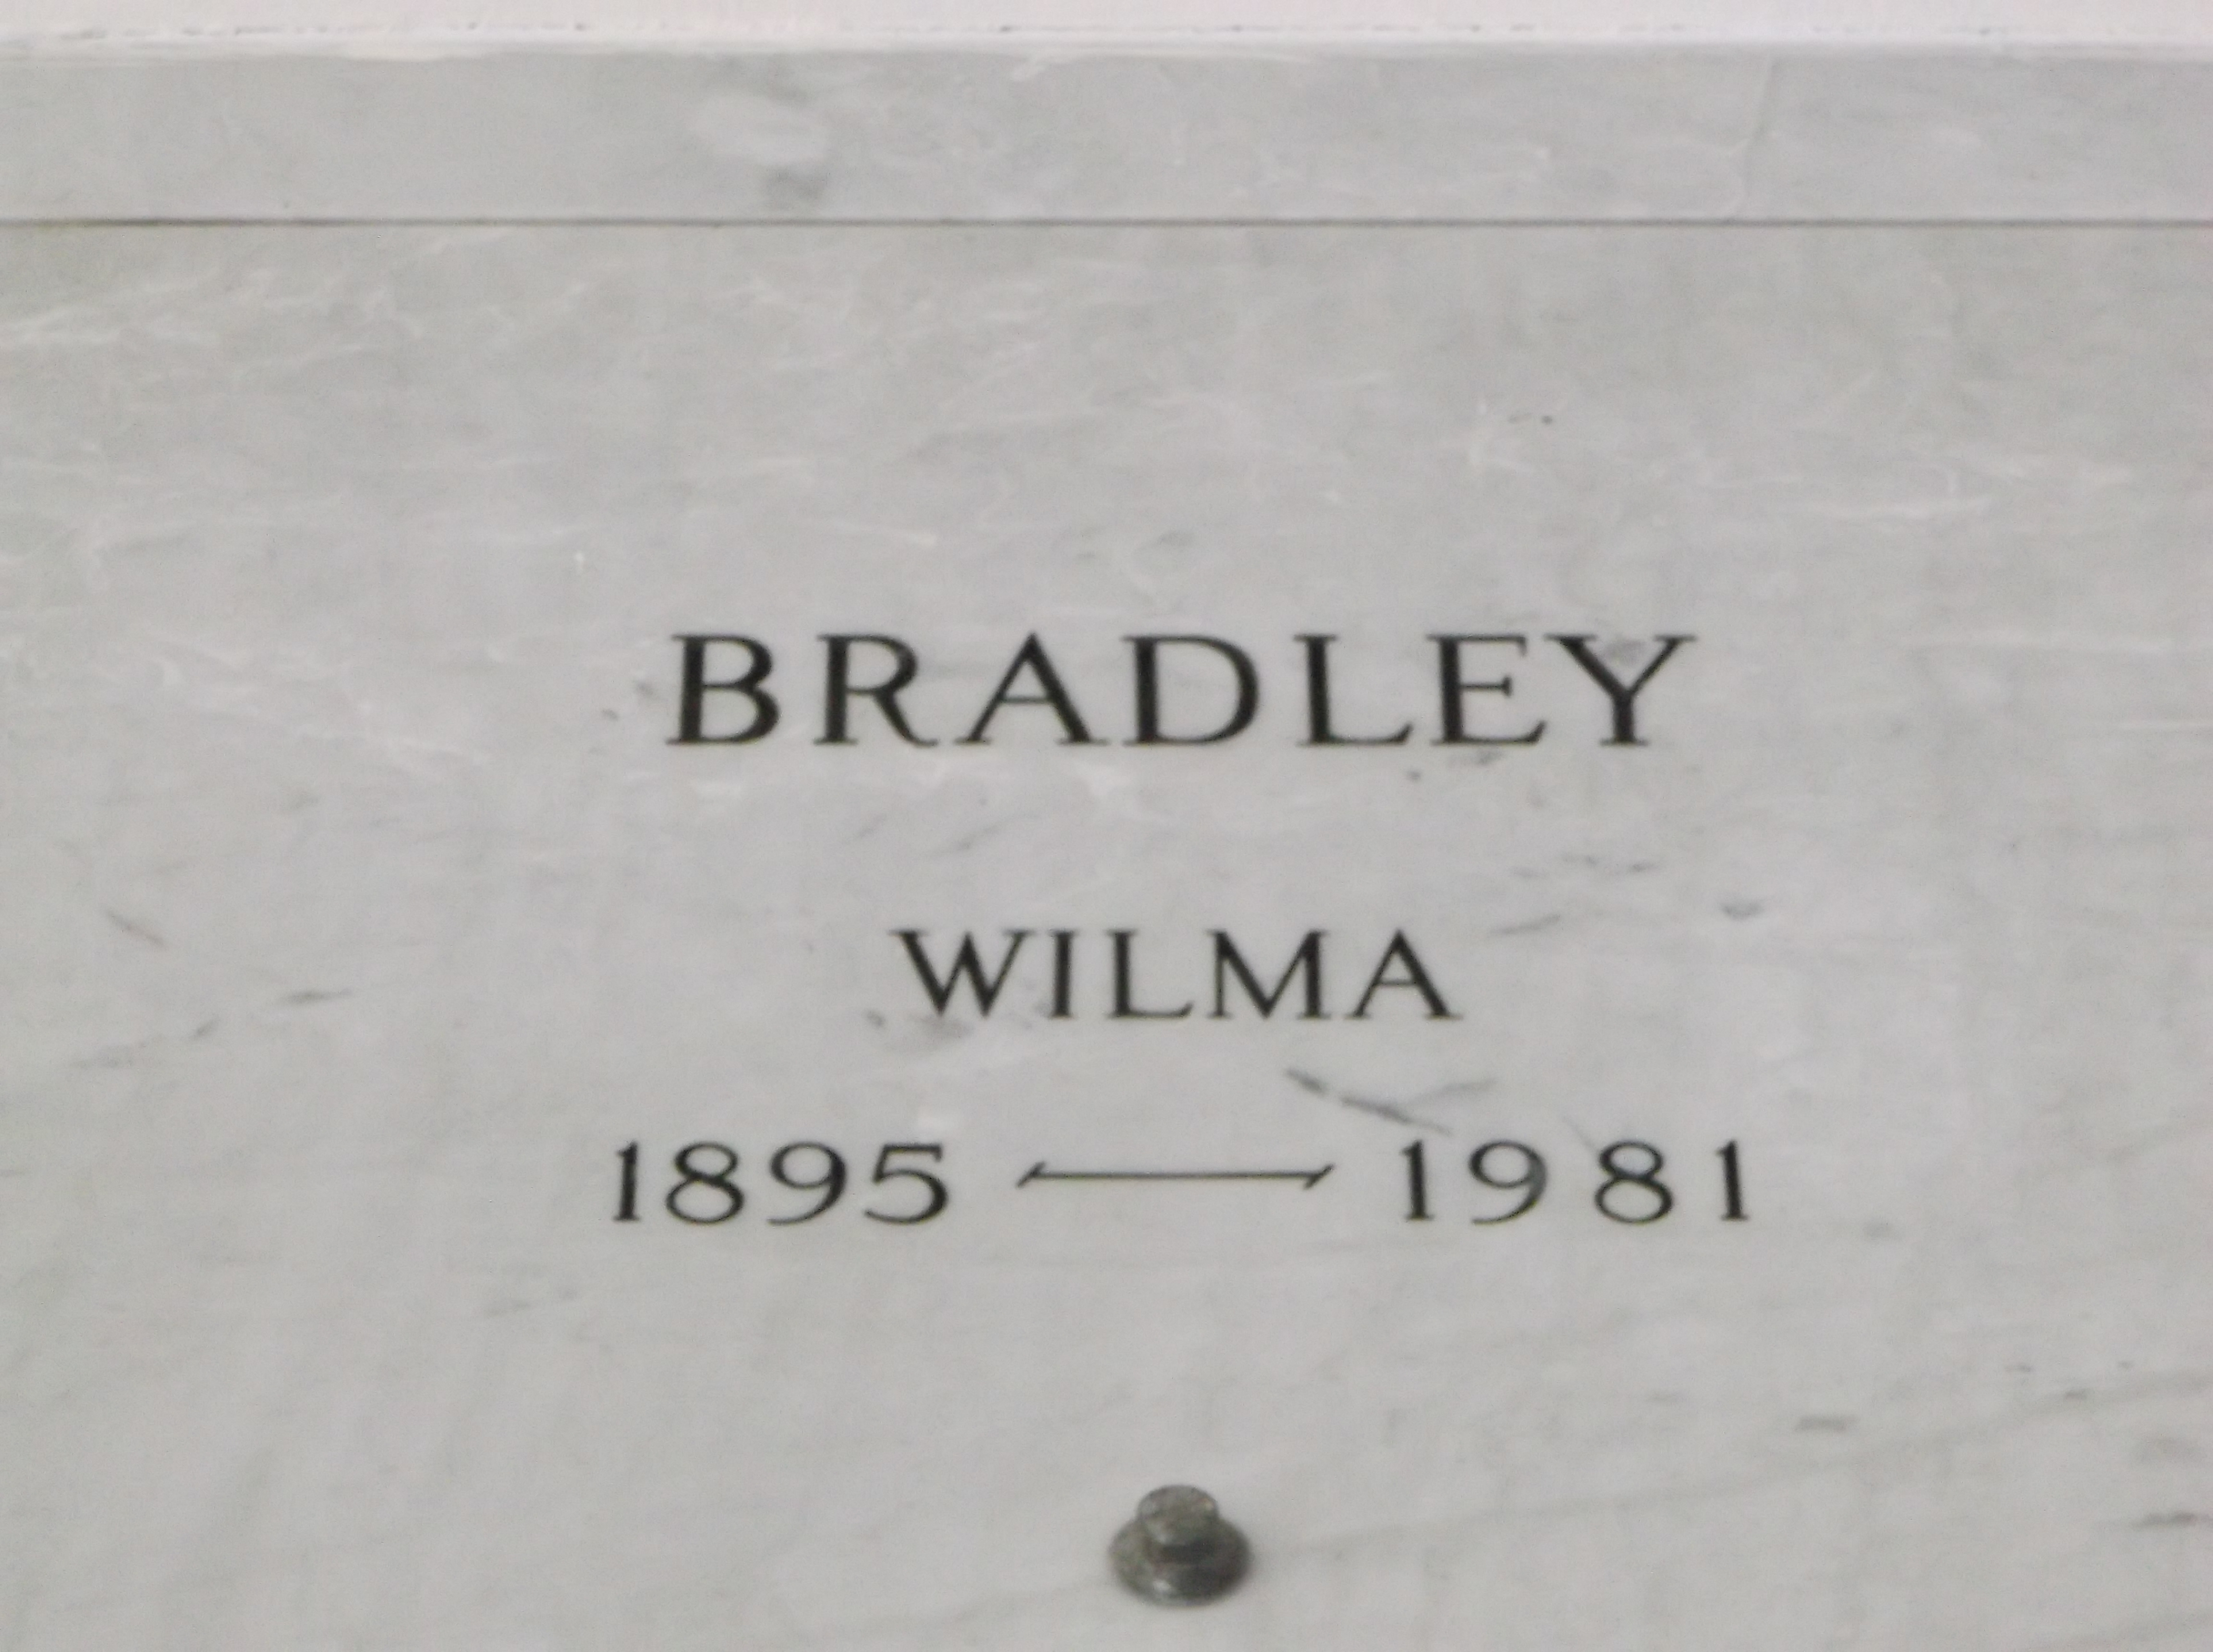 Wilma Bradley